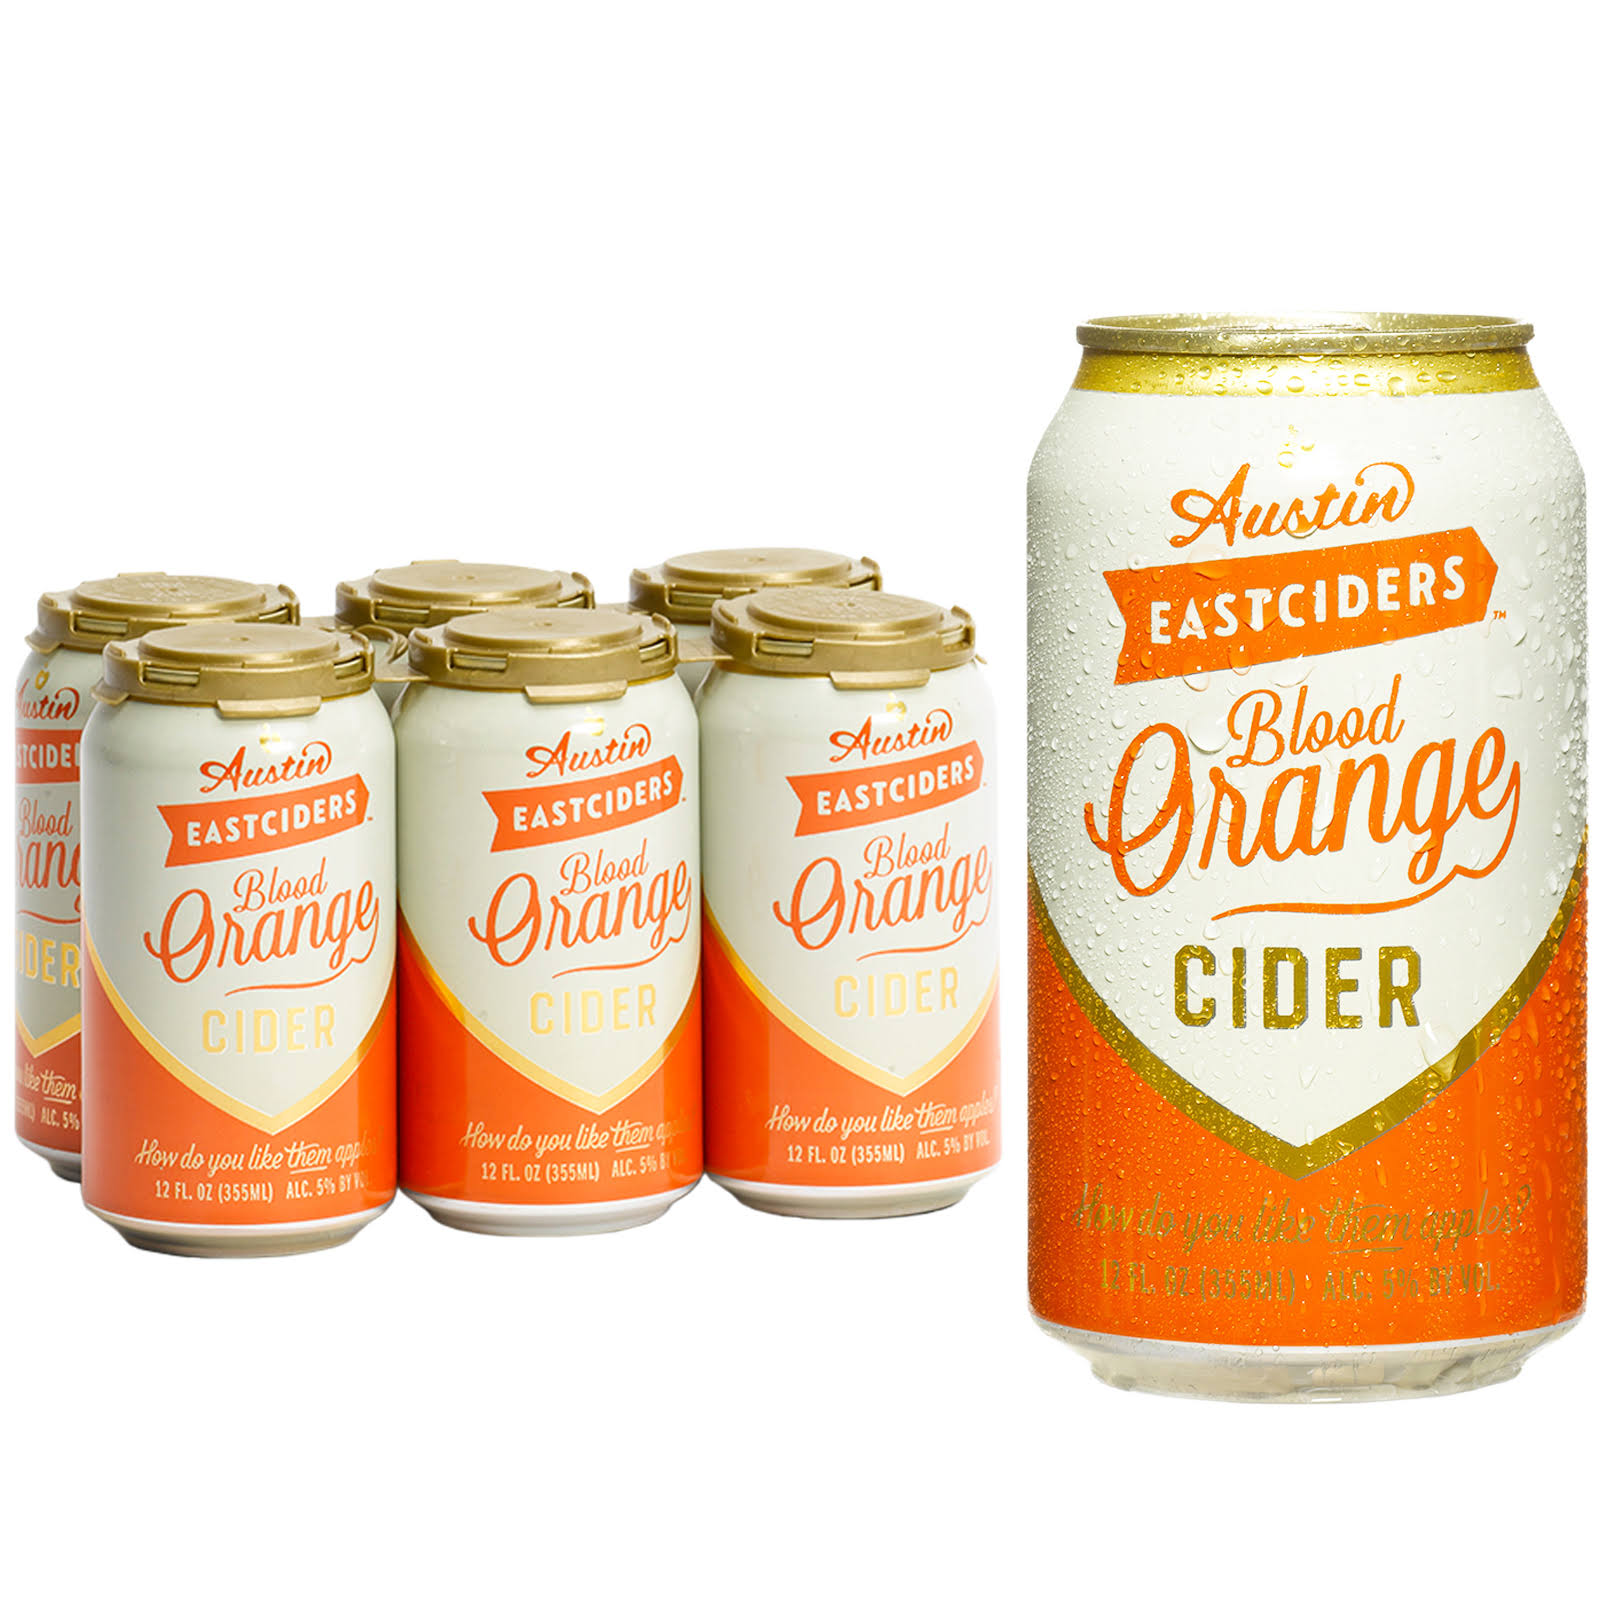 Austin Eastciders Cider, Blood Orange - 6 pack, 12 fl oz cans